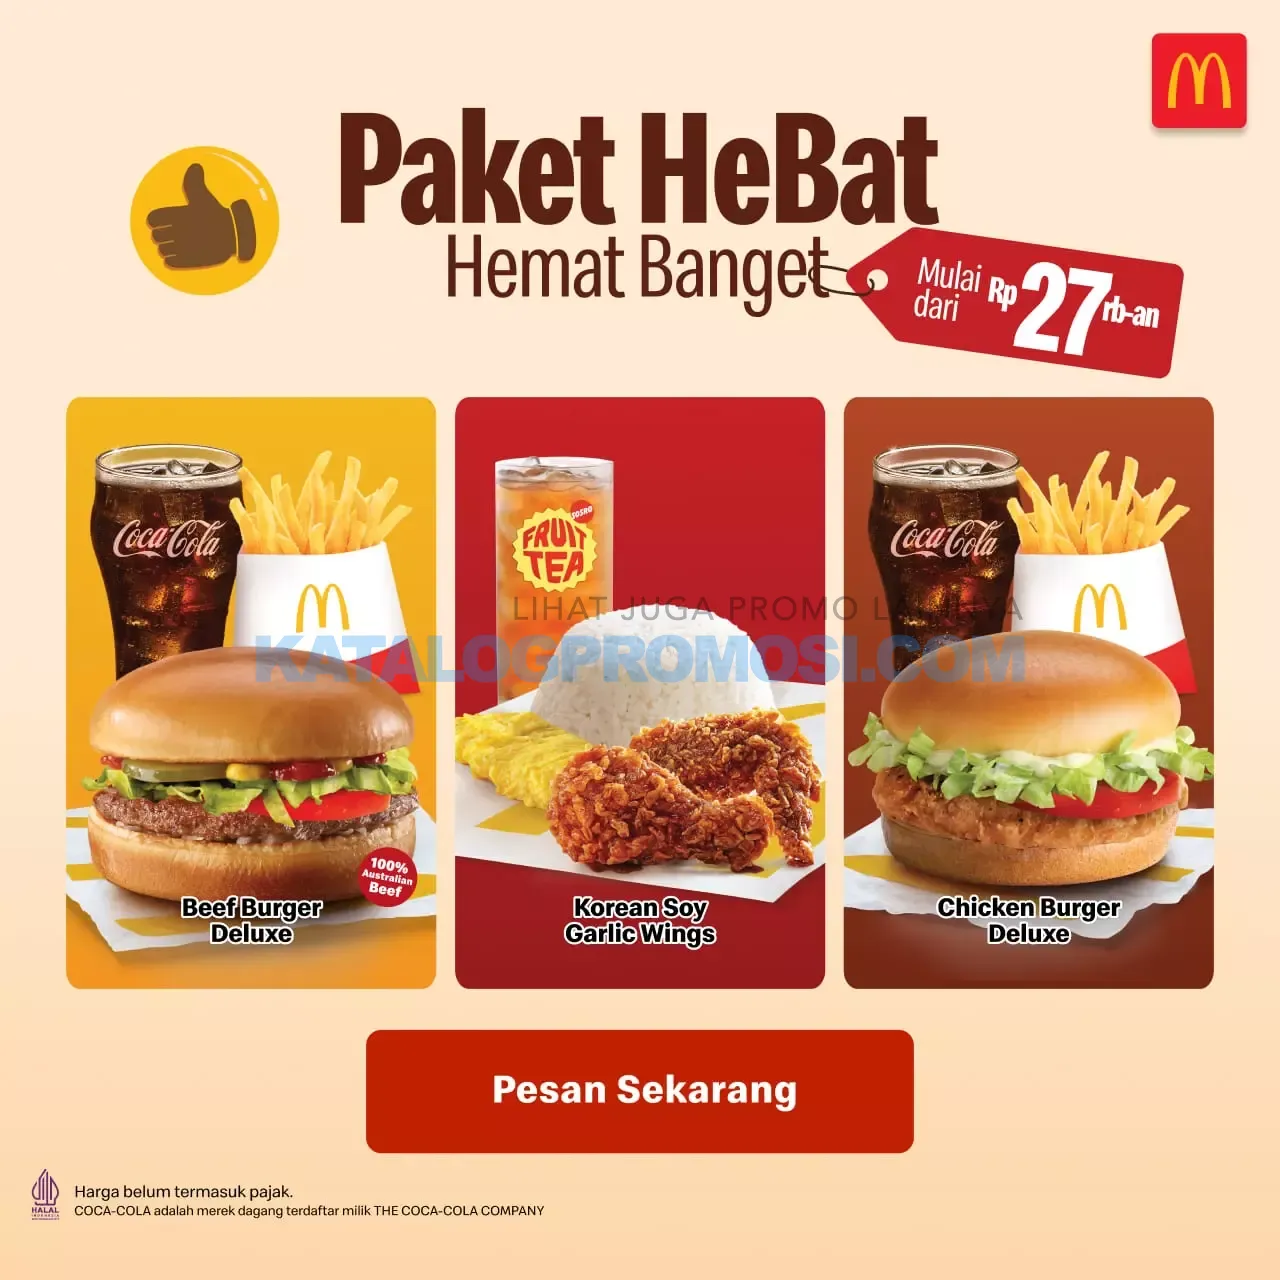 Promo McDonalds HeBat (Hemat Banget) Korean Soy Garlic Wings - Harga mulai Rp. 27RIBUAN